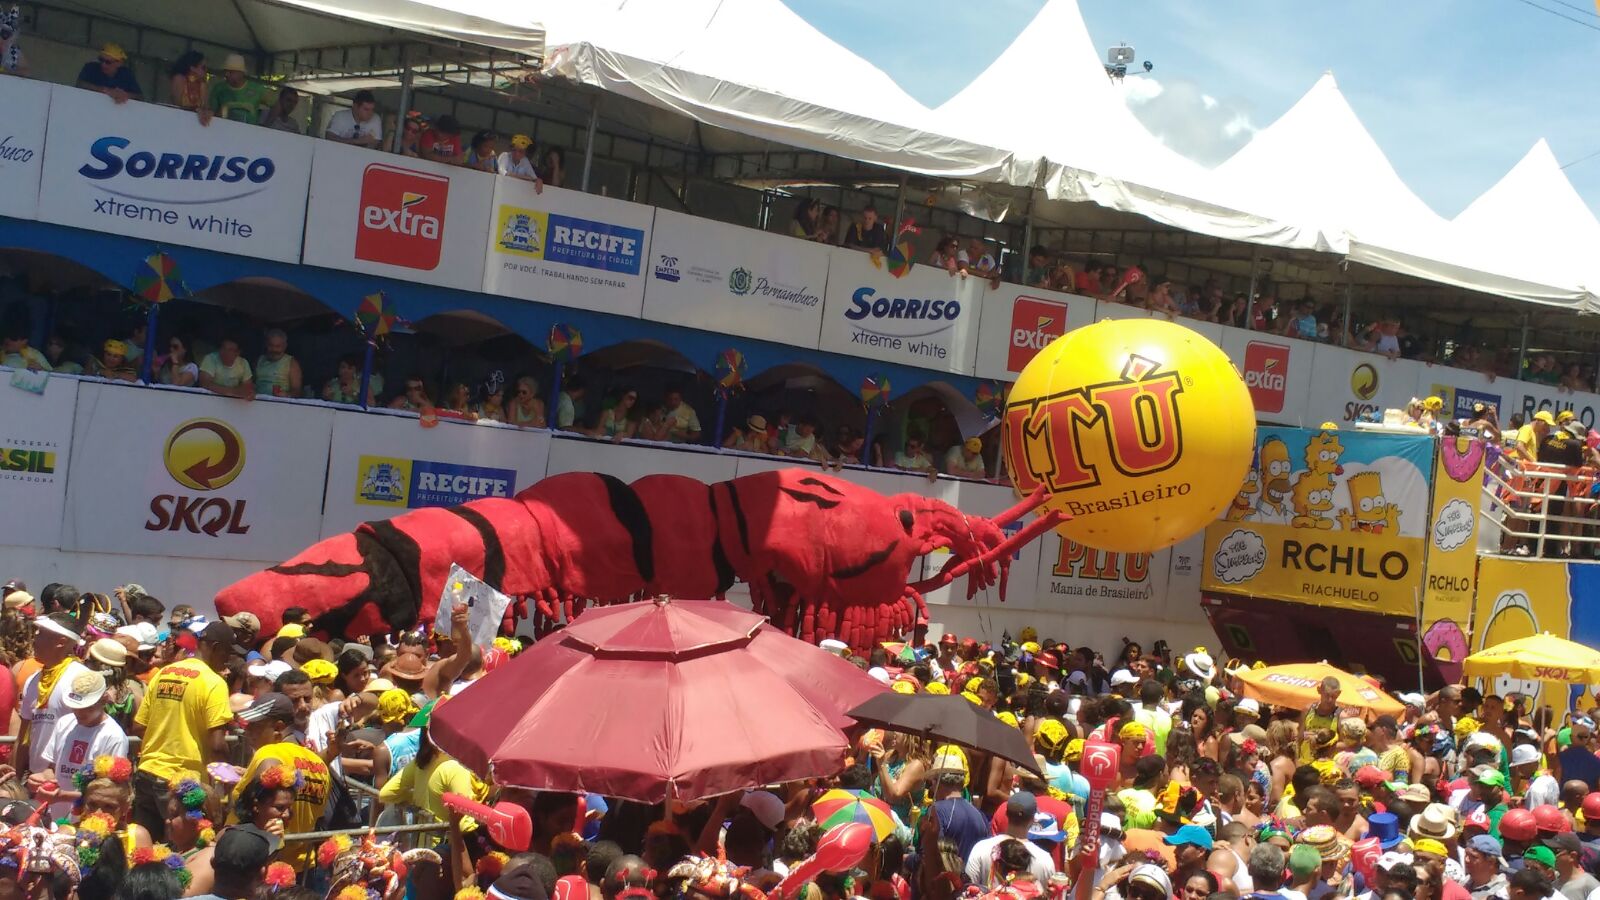 PITÚ coloca bloco na rua e incentiva os festejos de Carnaval